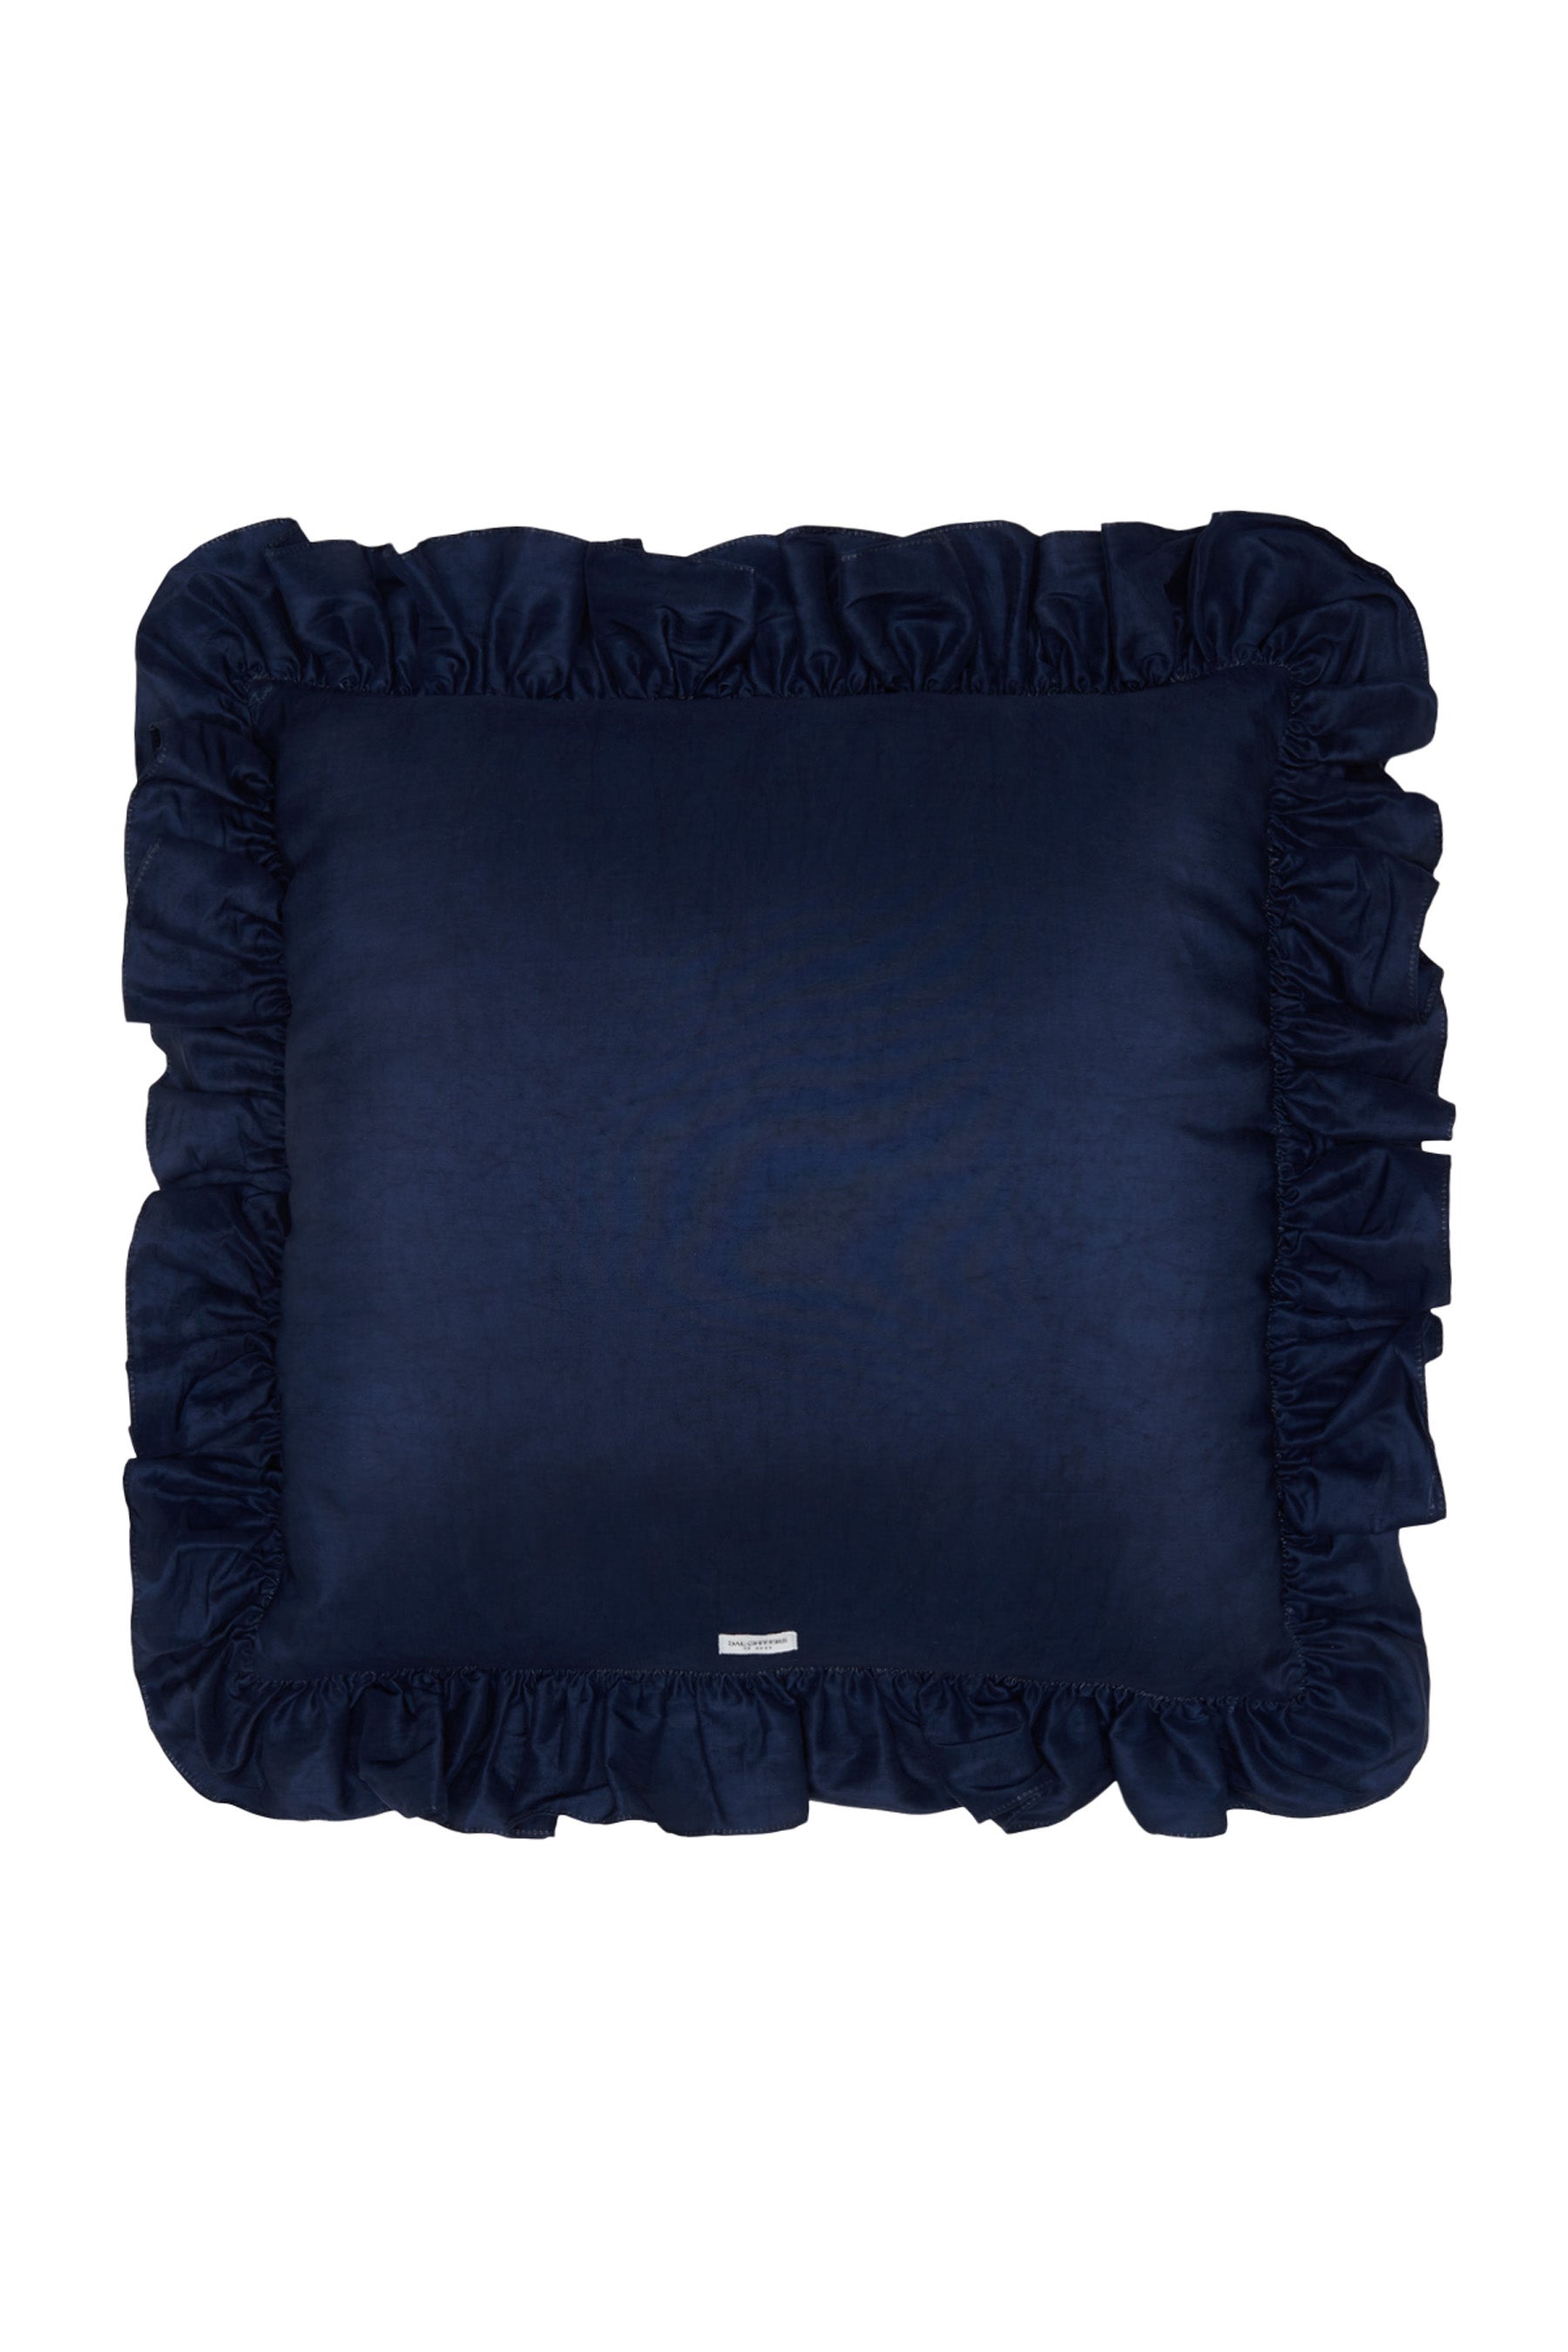 Neela Silk Ruffle Cushion